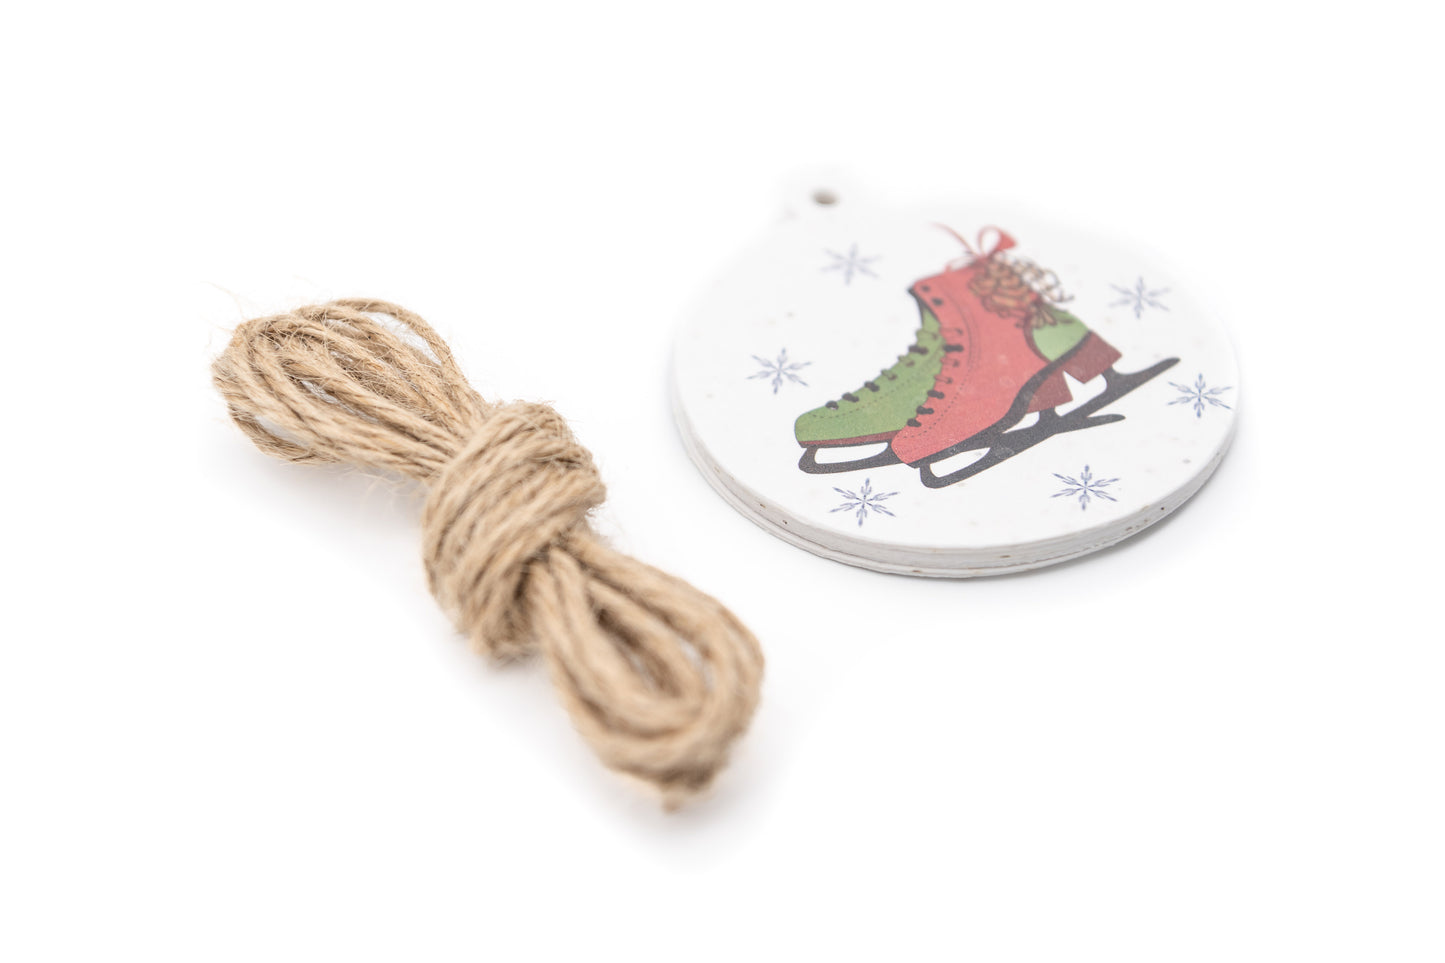 Get Your Skates On – plantable Christmas gift tag